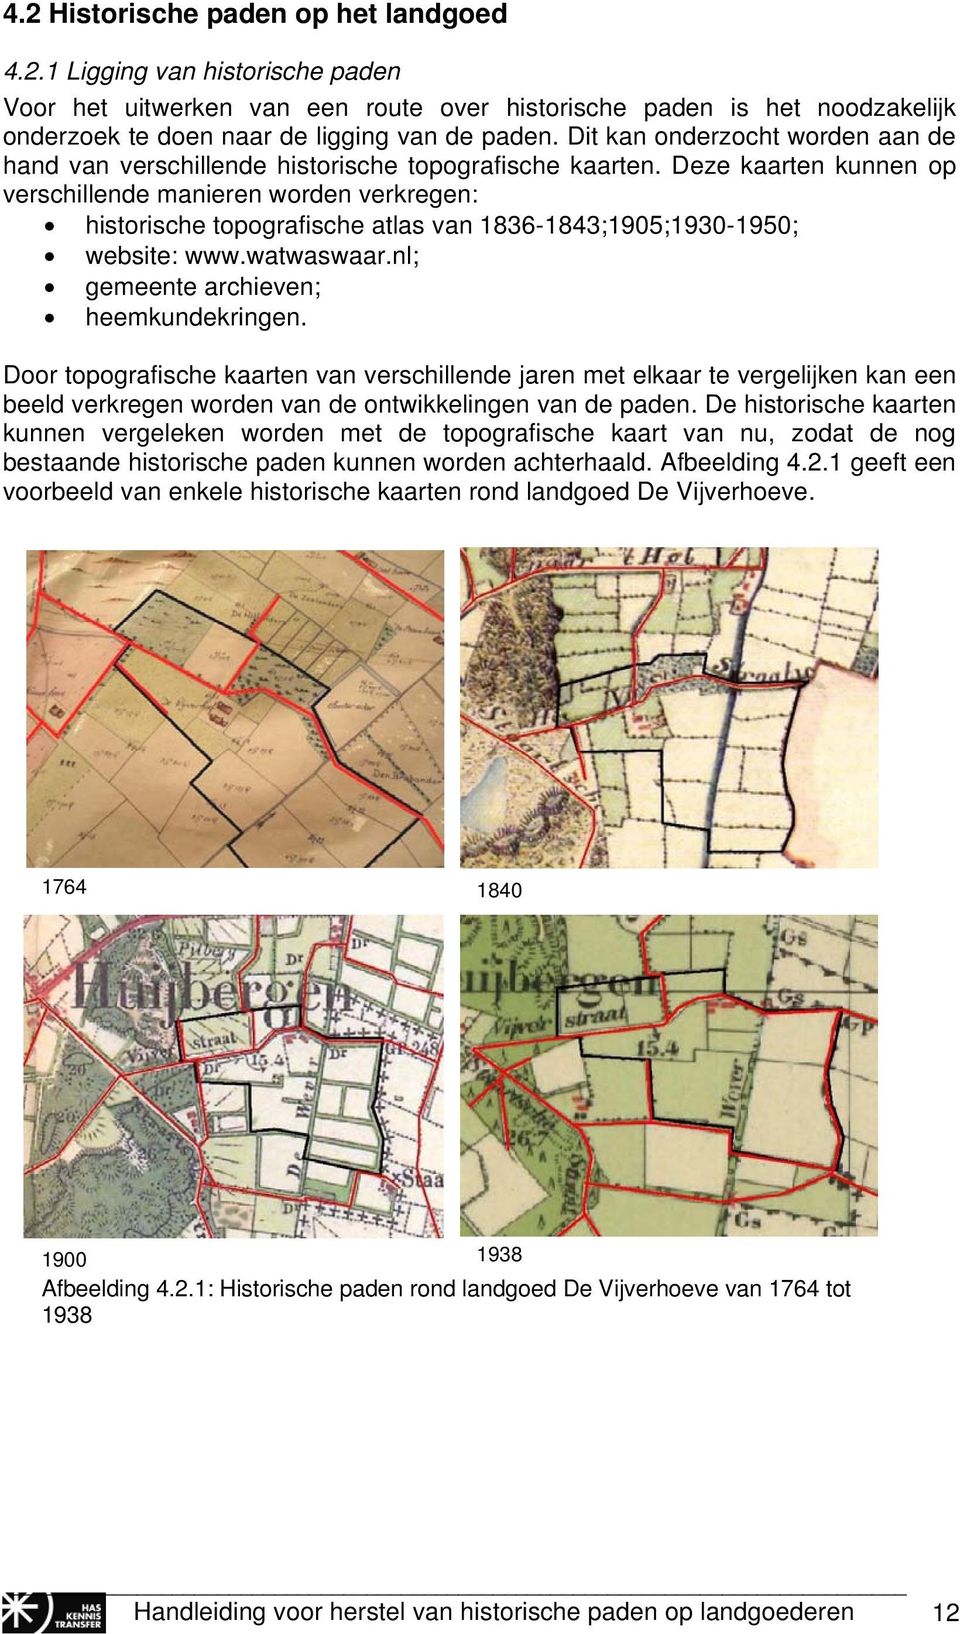 Deze kaarten kunnen op verschillende manieren worden verkregen: historische topografische atlas van 1836-1843;1905;1930-1950; website: www.watwaswaar.nl; gemeente archieven; heemkundekringen.